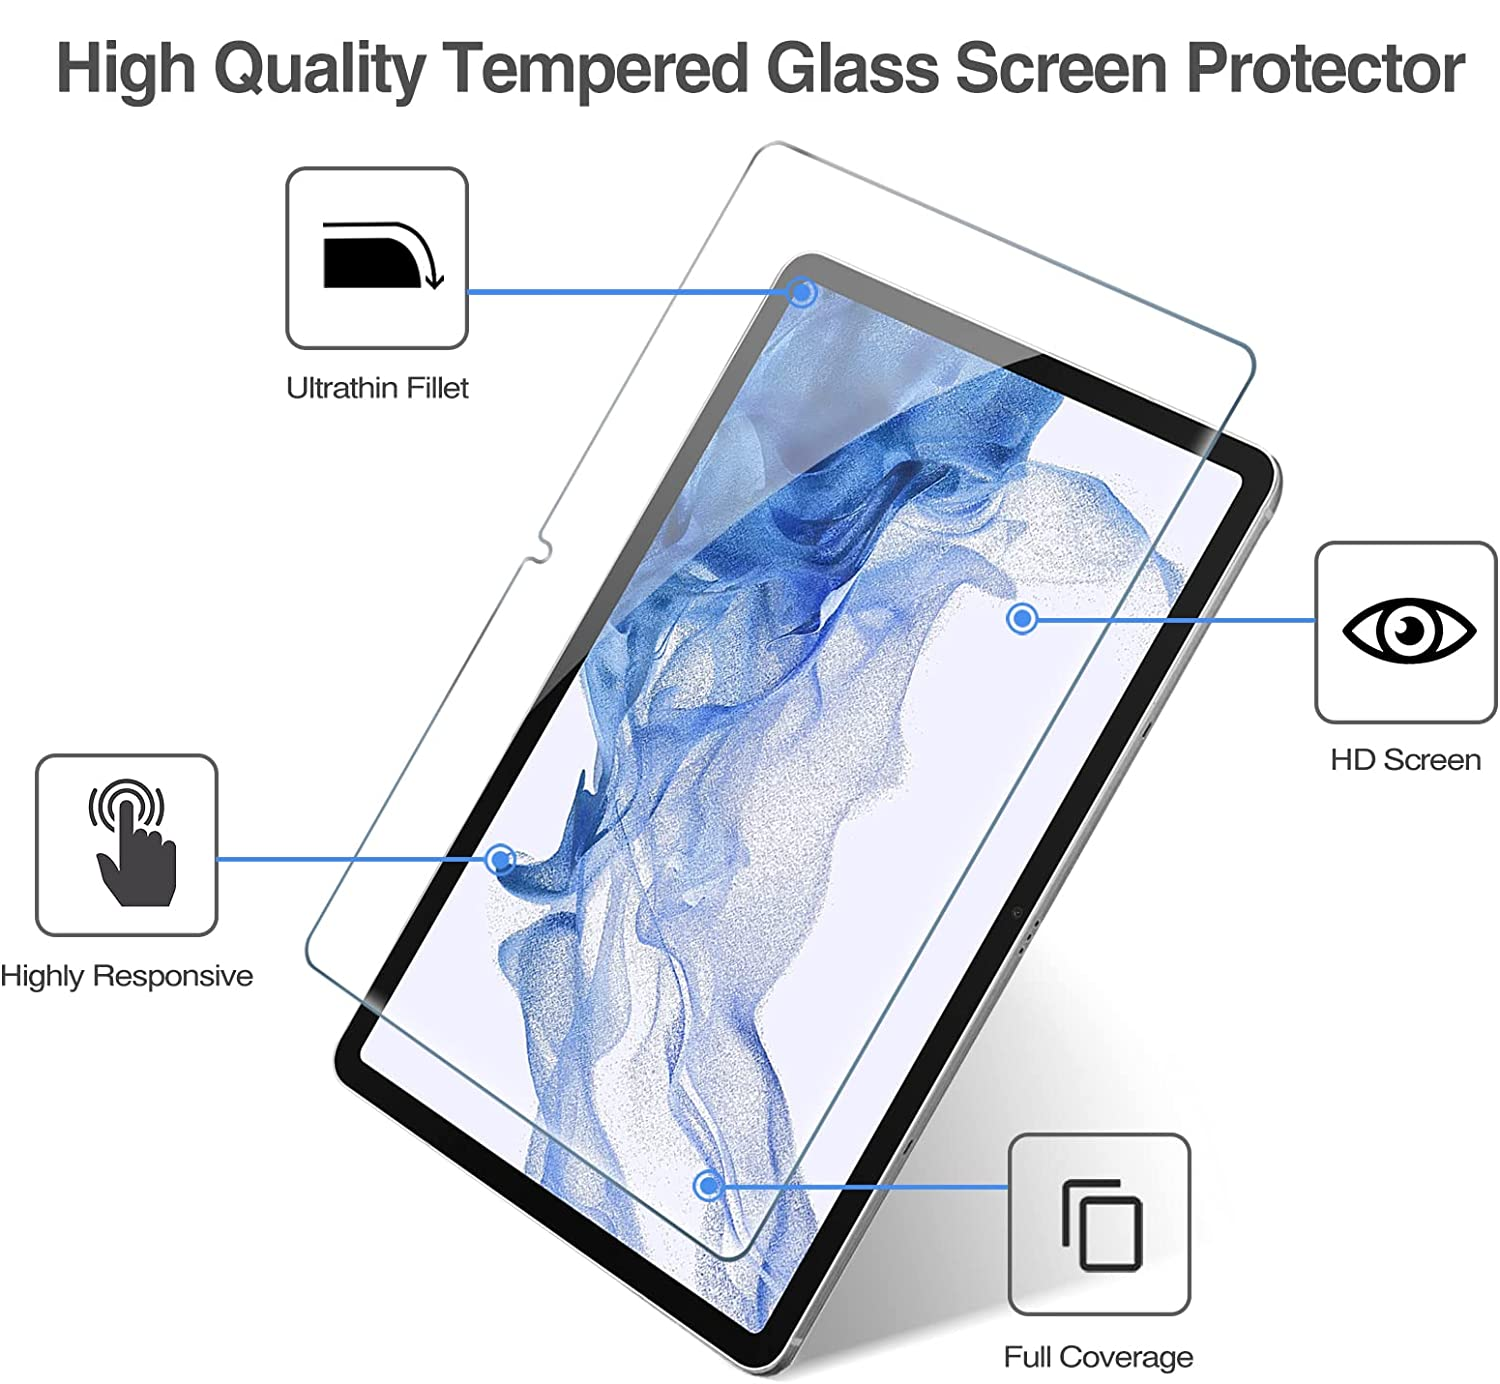 Miếng dán kính cường lực màn hình cho Samsung Galaxy Tab A8 10.5 inch 2022 (SM-X200 / X205 / X207) hiệu HOTCASE Mercury H+ Pro (Chống va đập, vát cạnh 2.5D, chống vân tay, mỏng 0.3mm, độ cứng 9H) - Hàng nhập khẩu